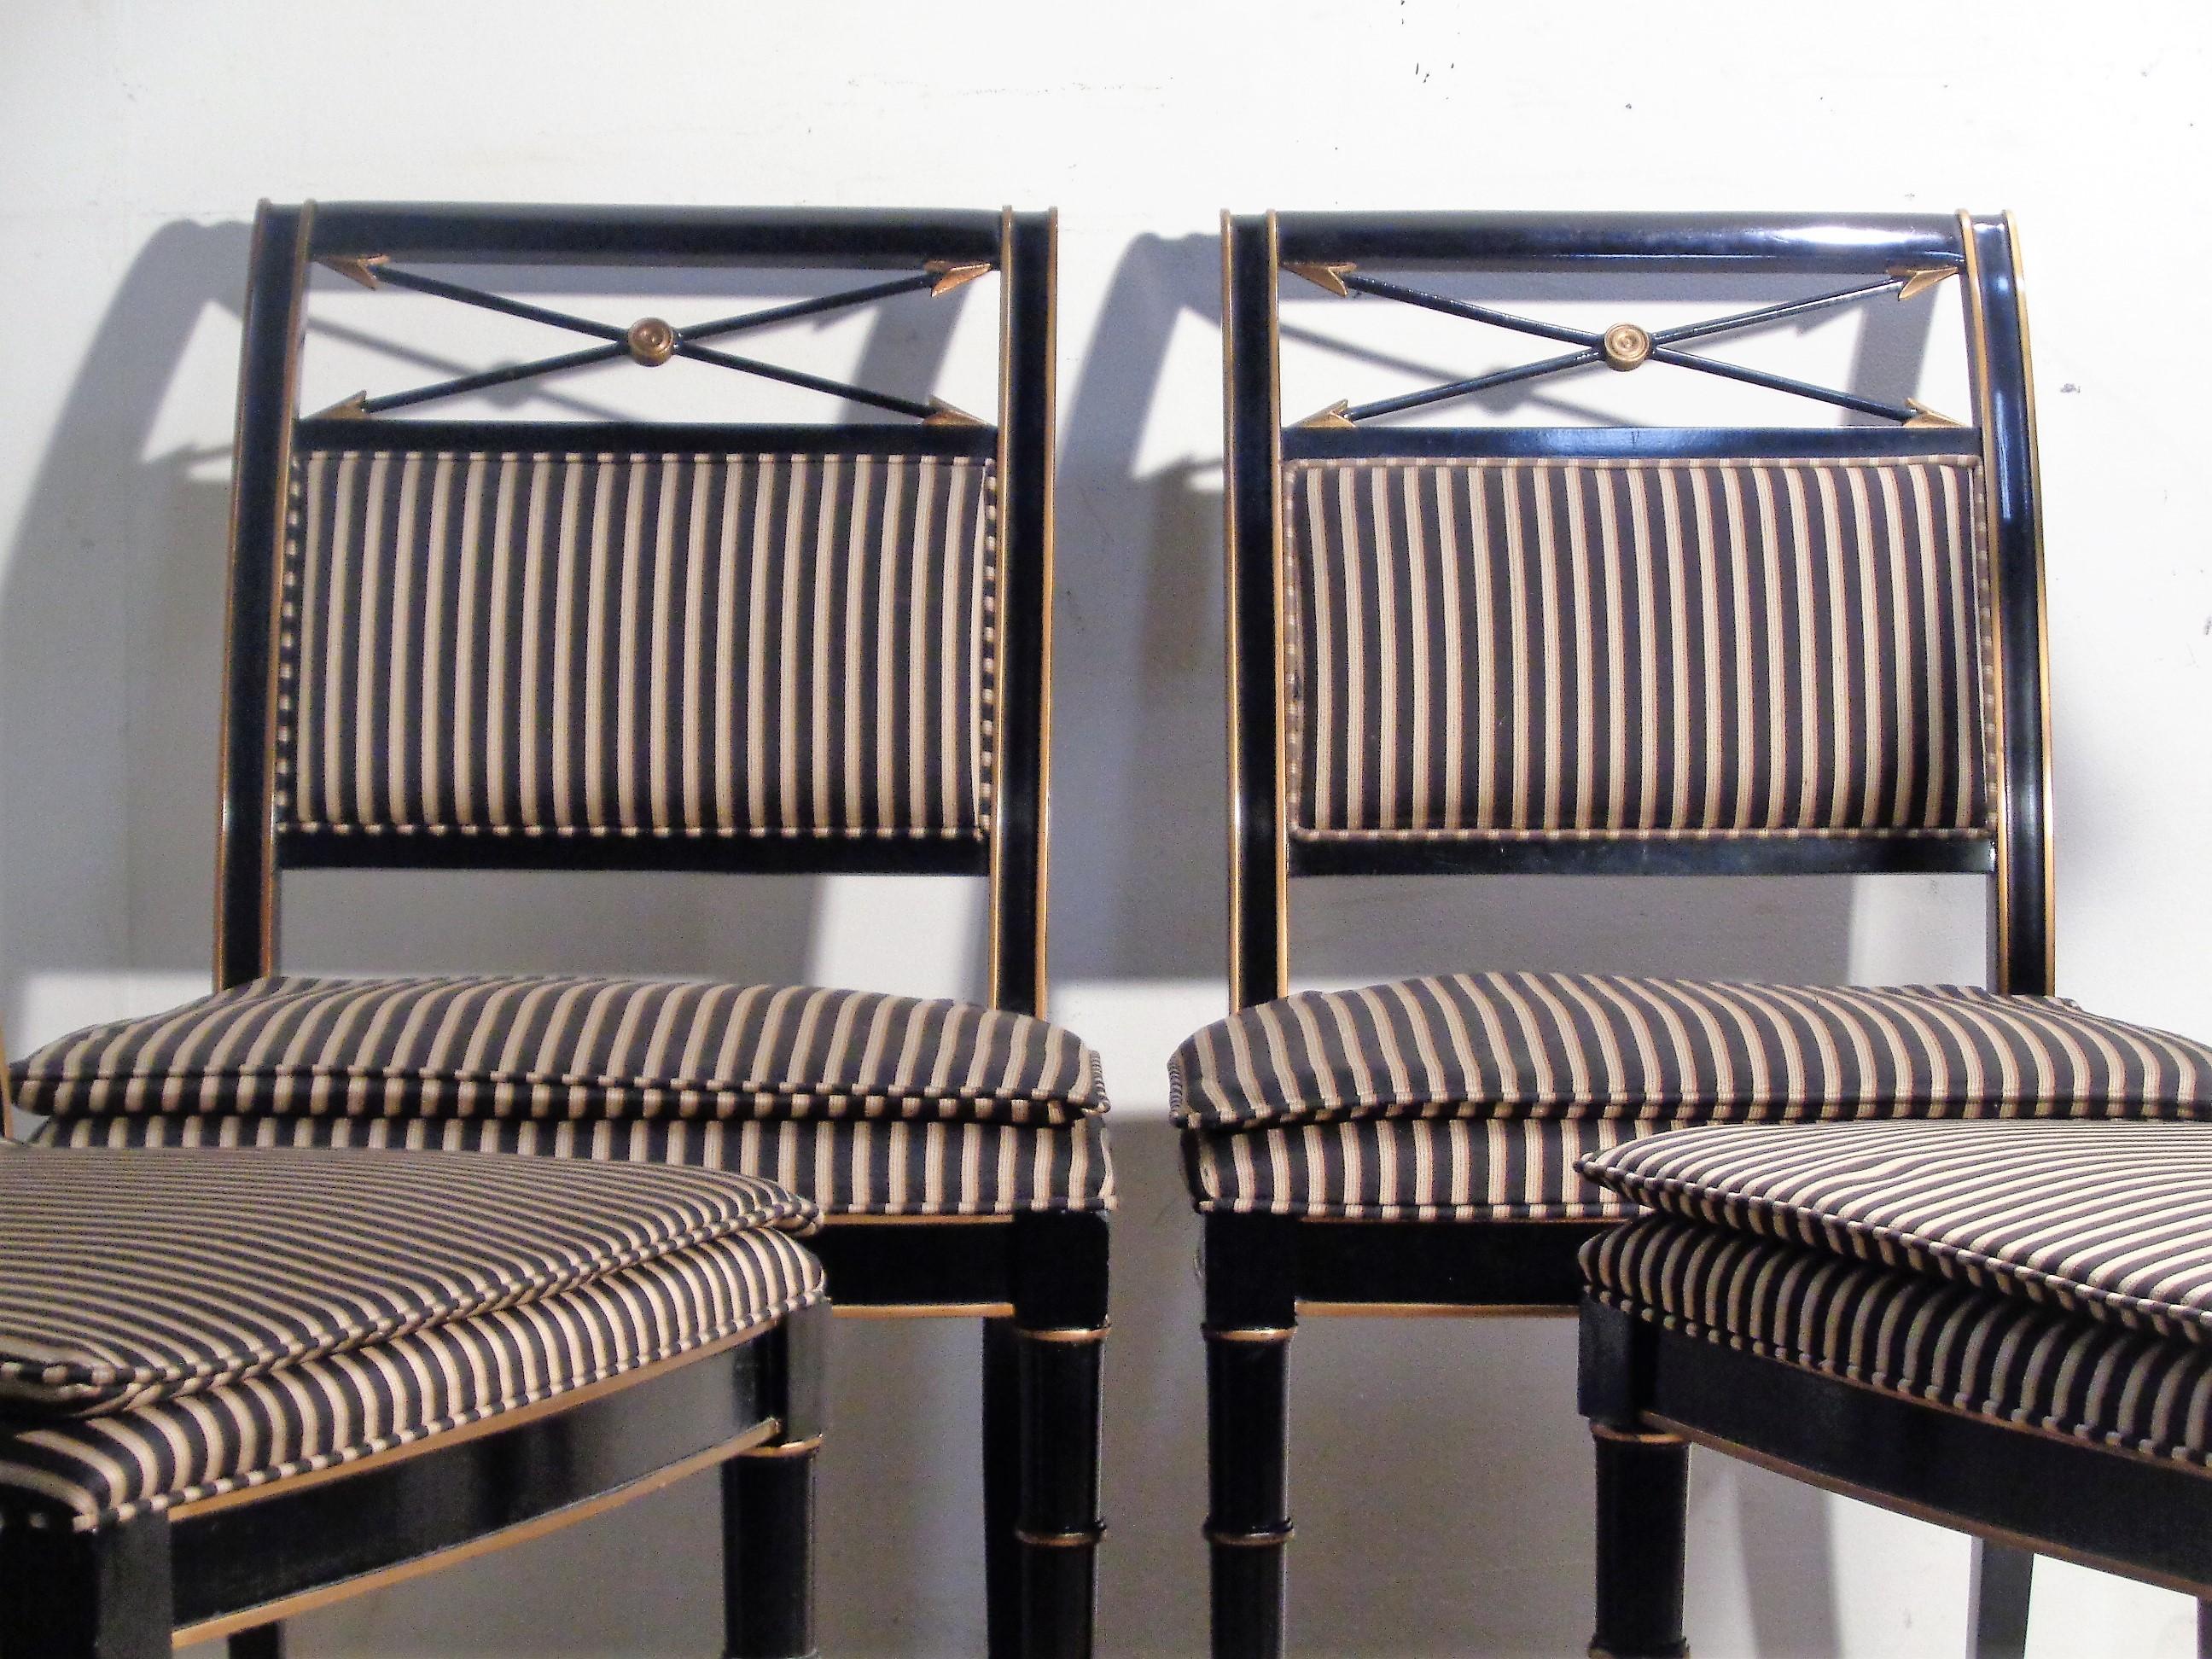 Ensemble de quatre chaises d'appoint / chaises de salle à manger de style néoclassique Regency. Assise et dossier tapissés de rayures, pieds tournés en faux bambou, flèches croisées dorées sur le haut du dossier. Finition d'usine d'origine laquée